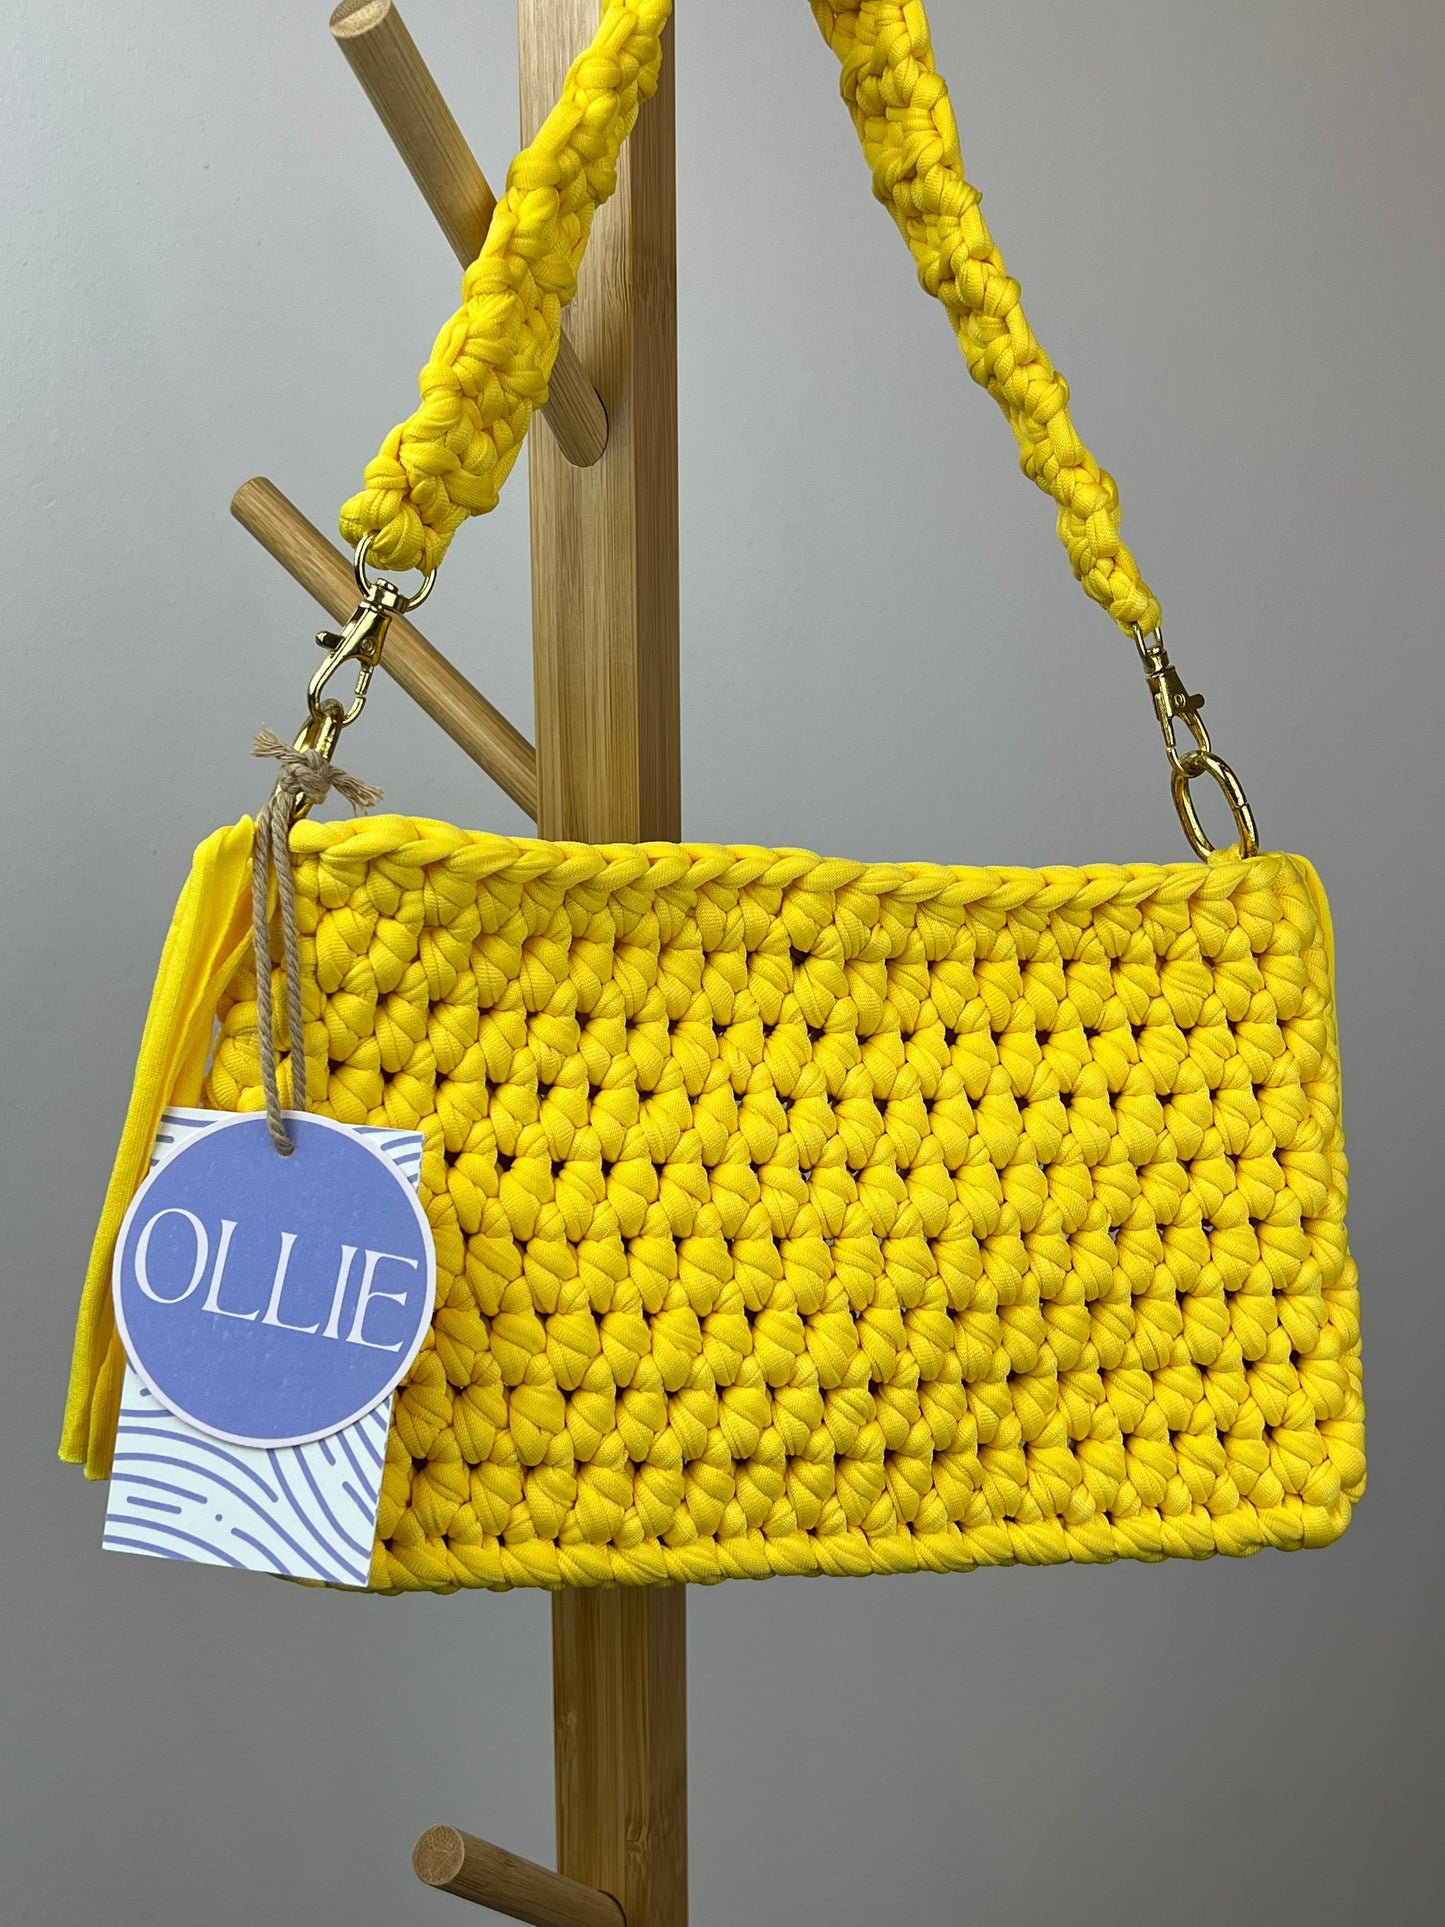 Handbags by @olliebyhannmade